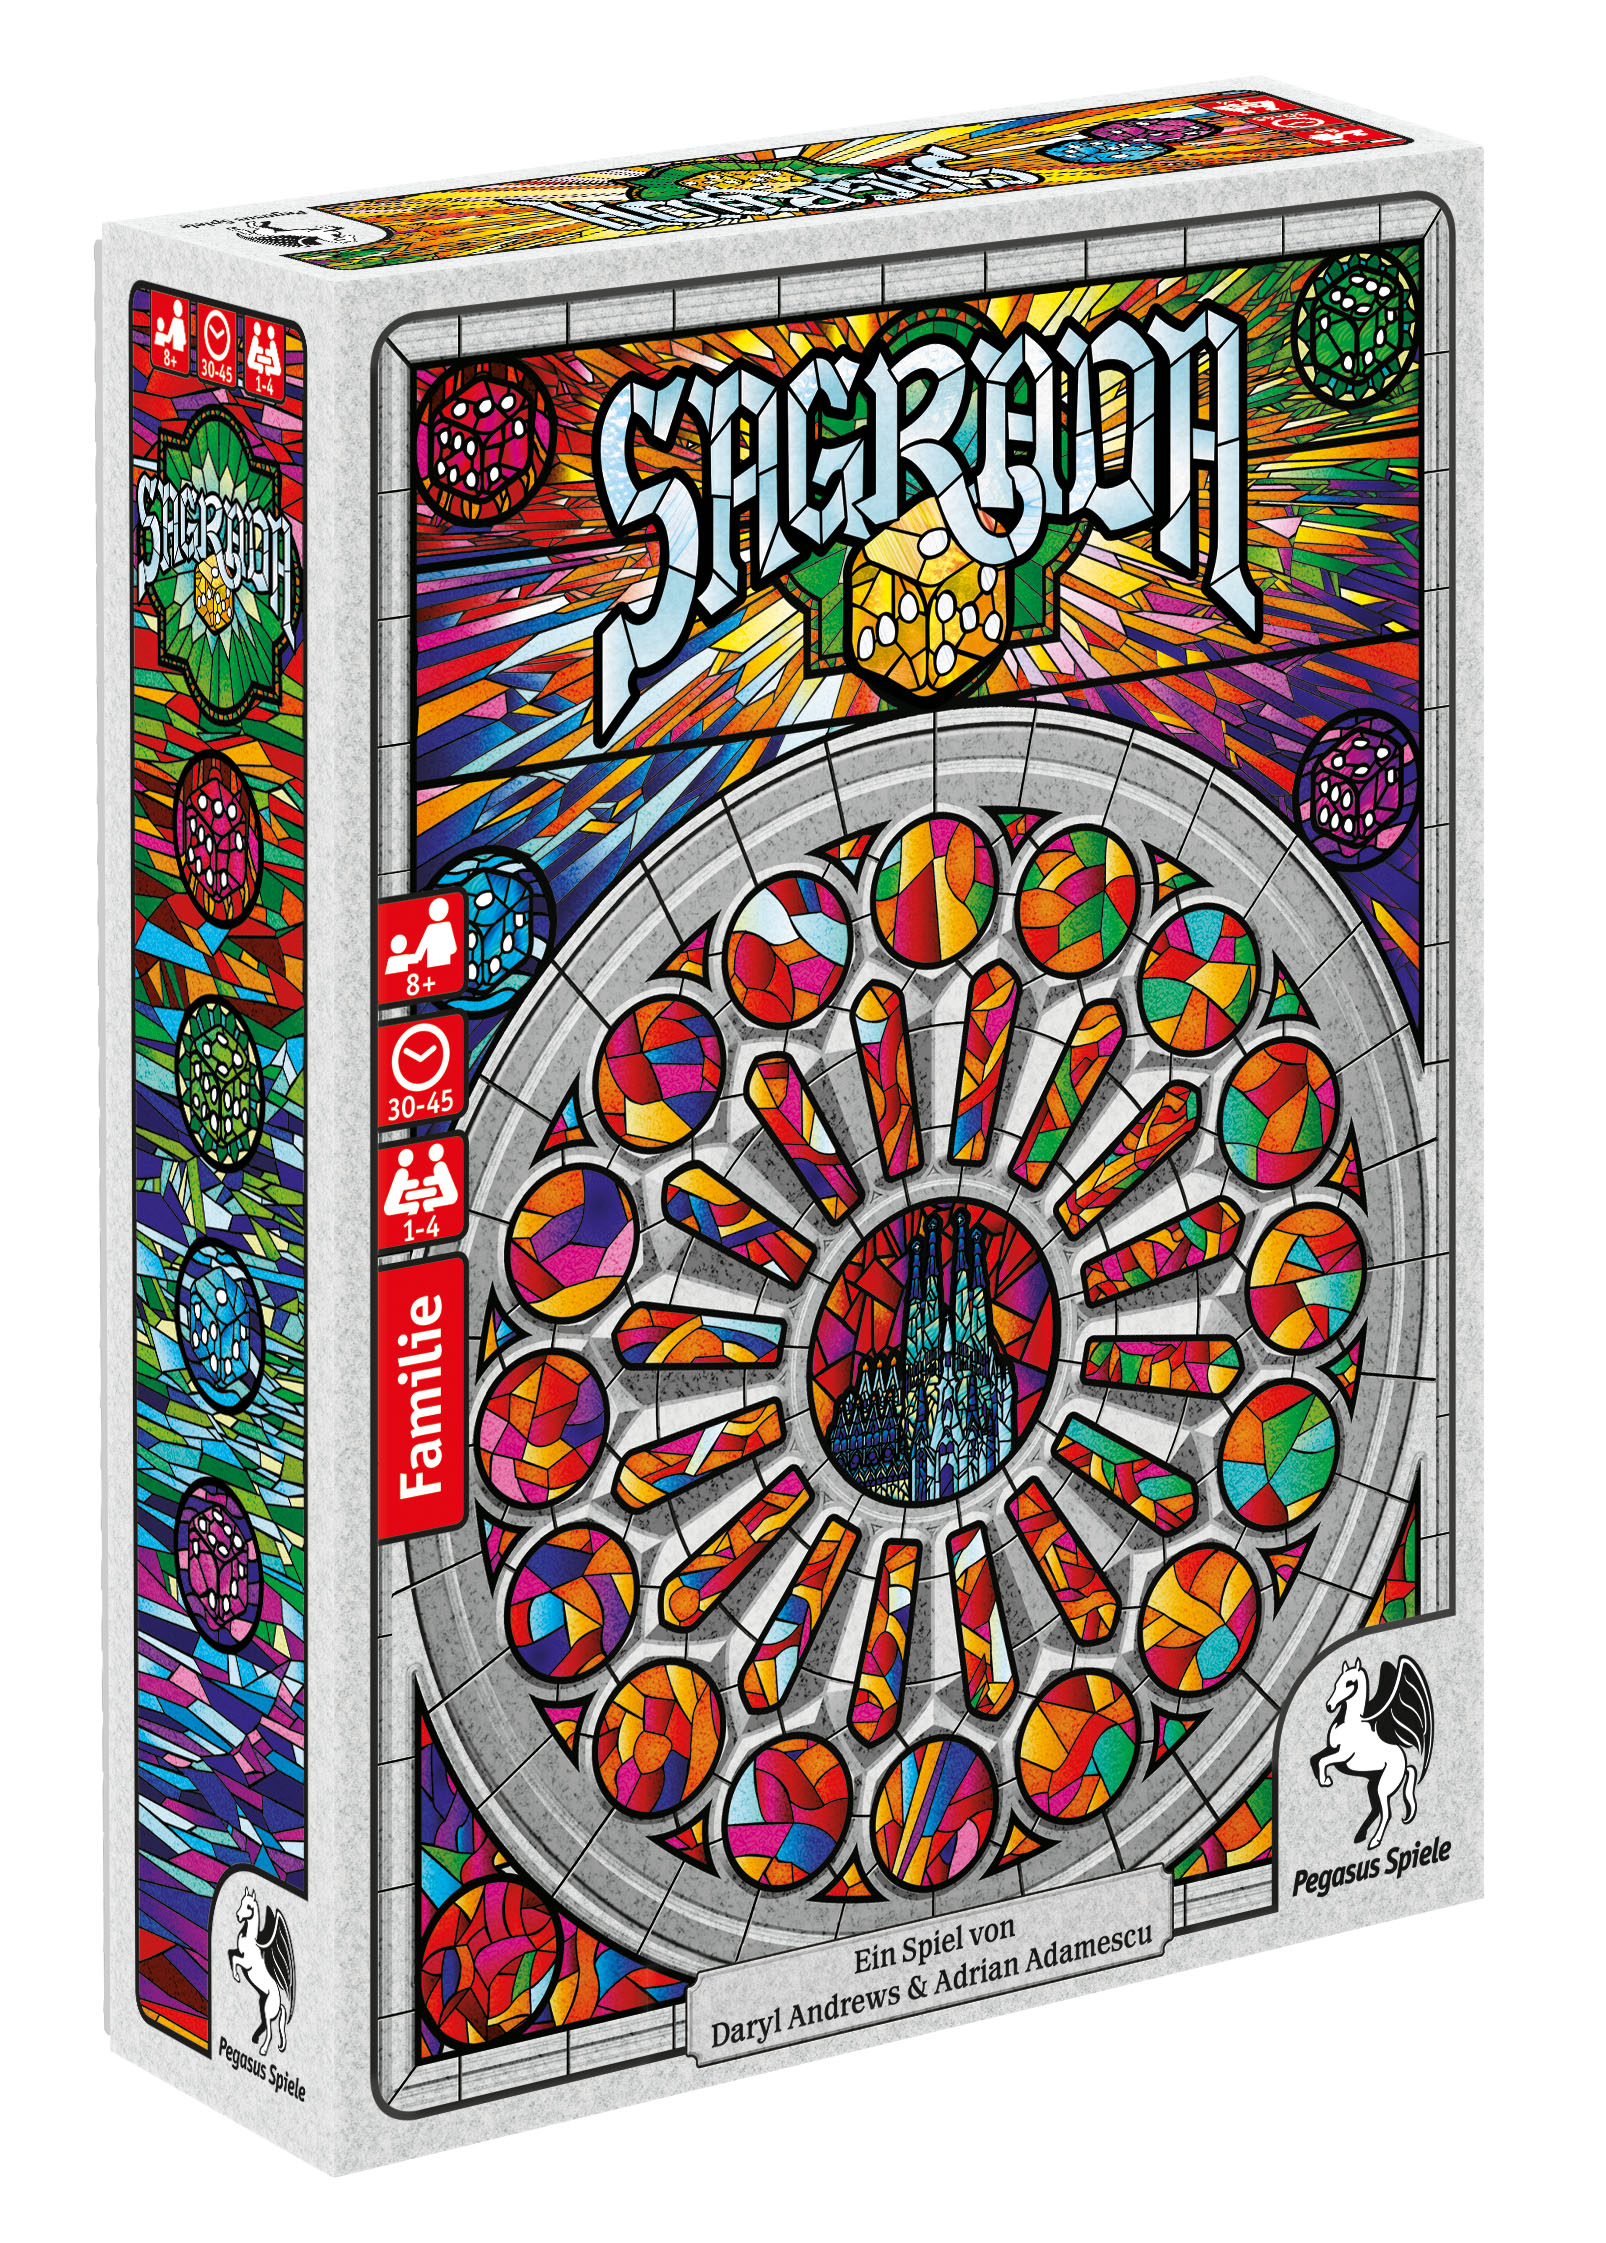 Sagrada erscheint voraussichtlich im Juli bei Pegasus SpieleSagrada - weitere Informationen vom Verlag